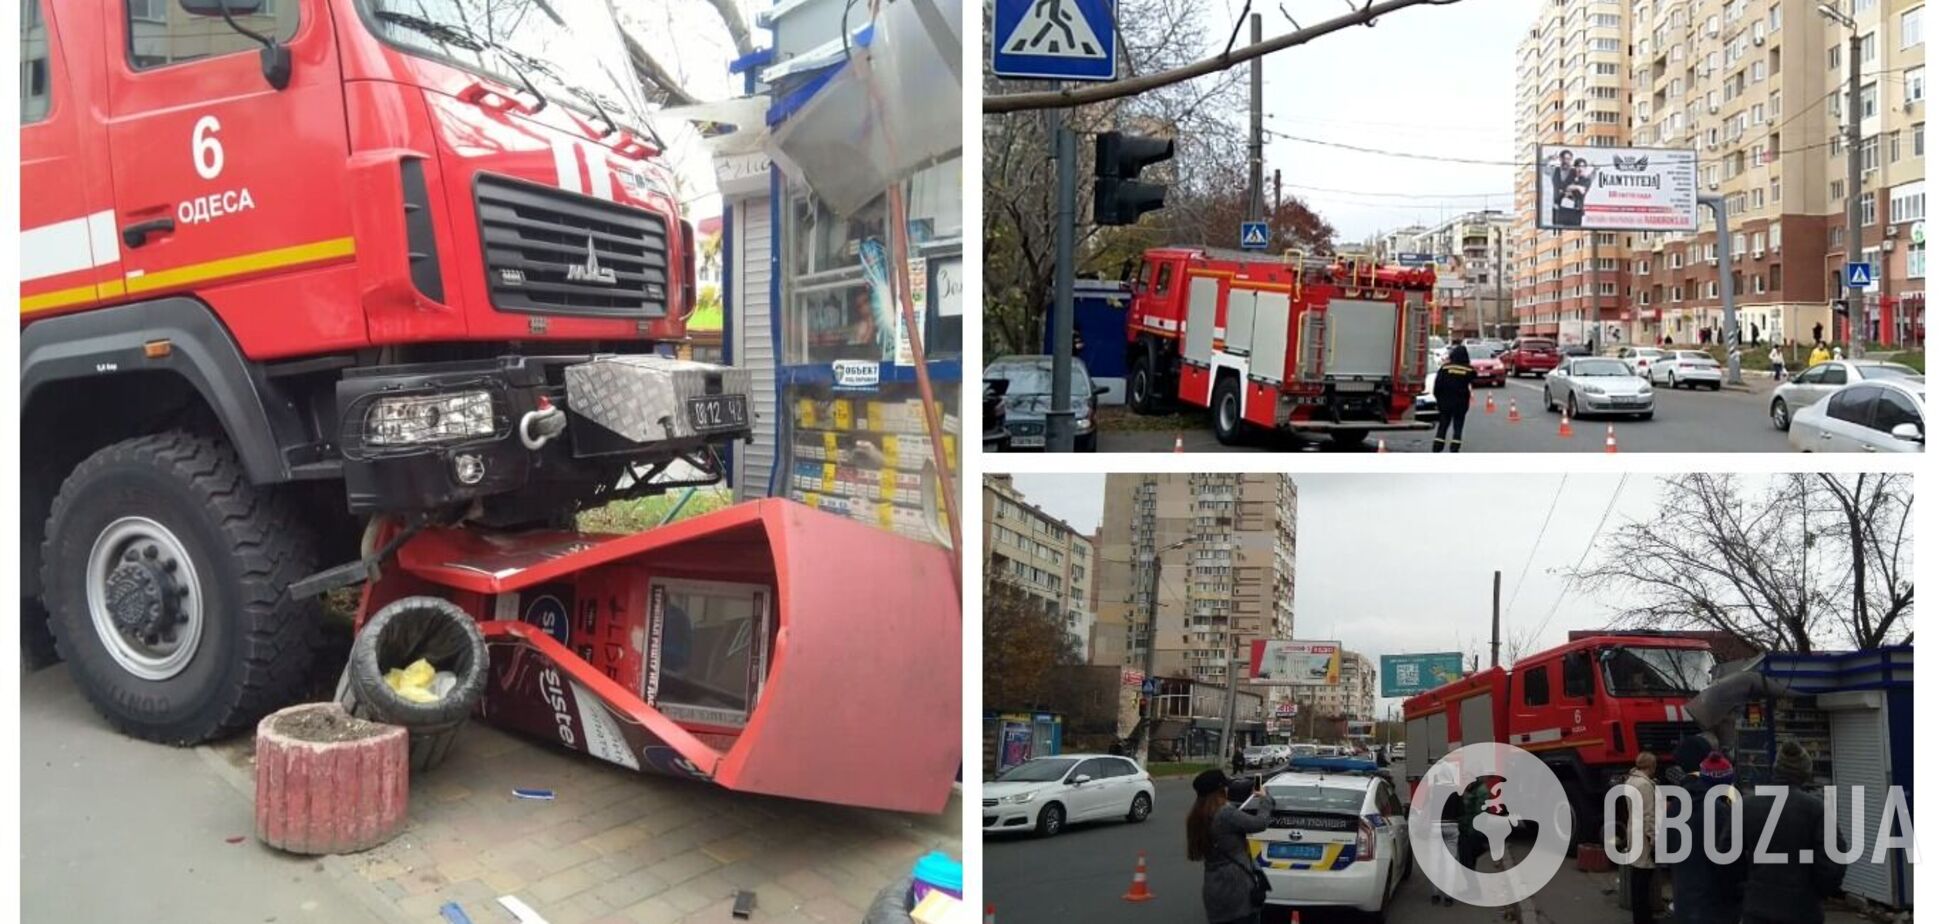 В Одессе пожарная машина вылетела на тротуар и врезалась в киоск. Фото и видео